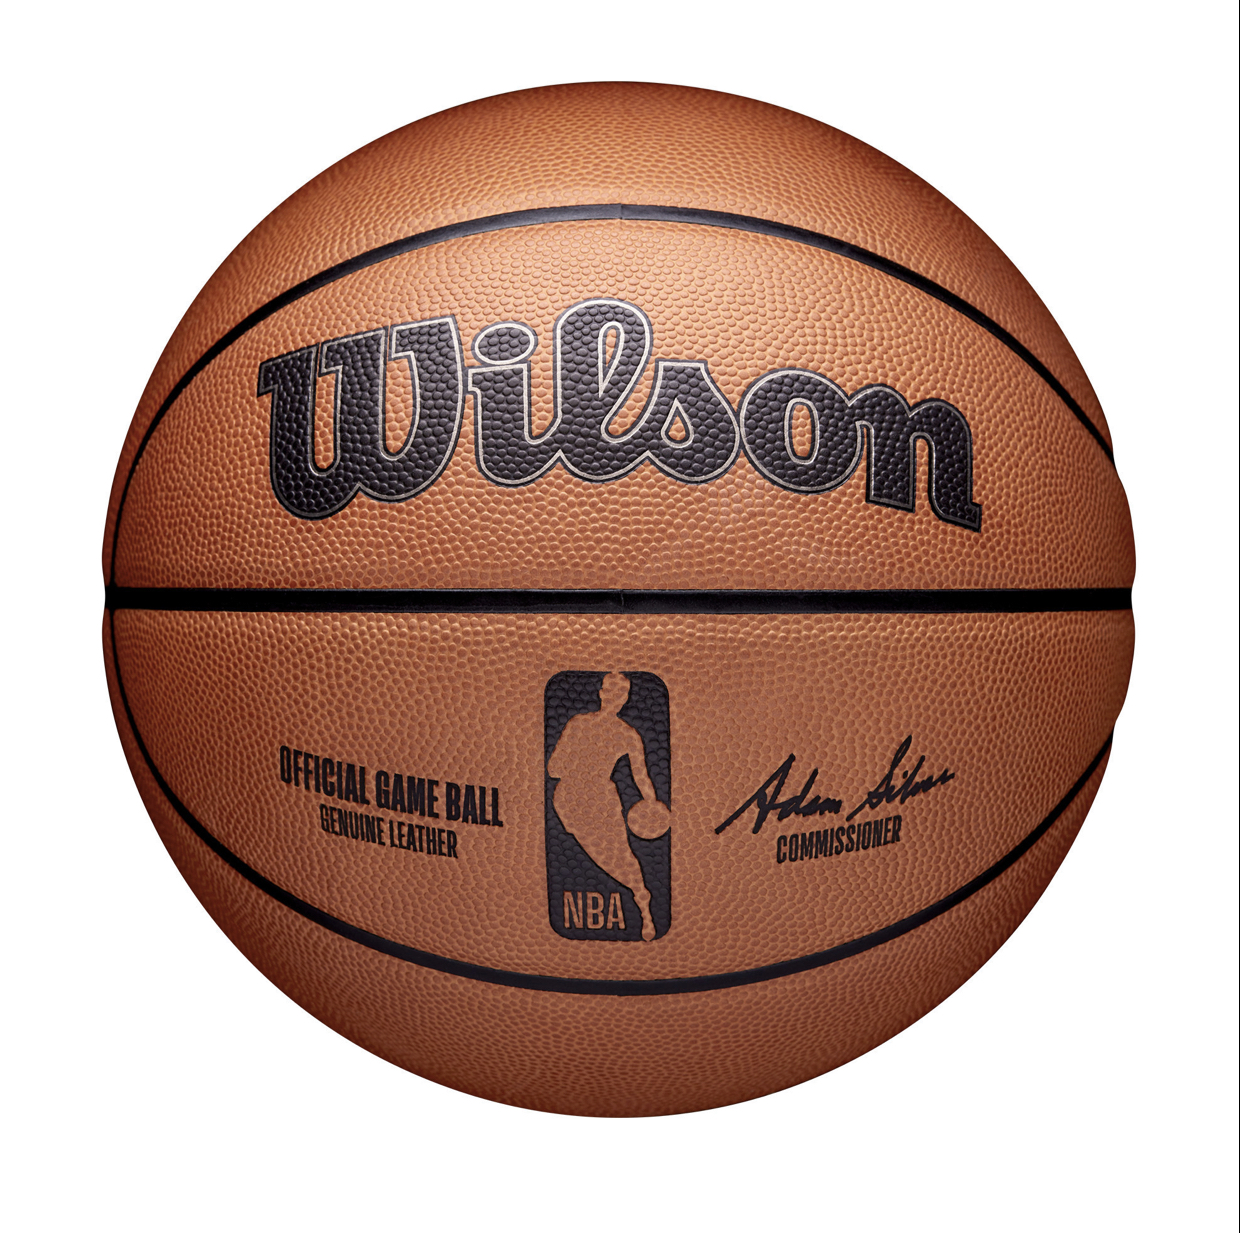 Autographed NBA Wilson Basketball